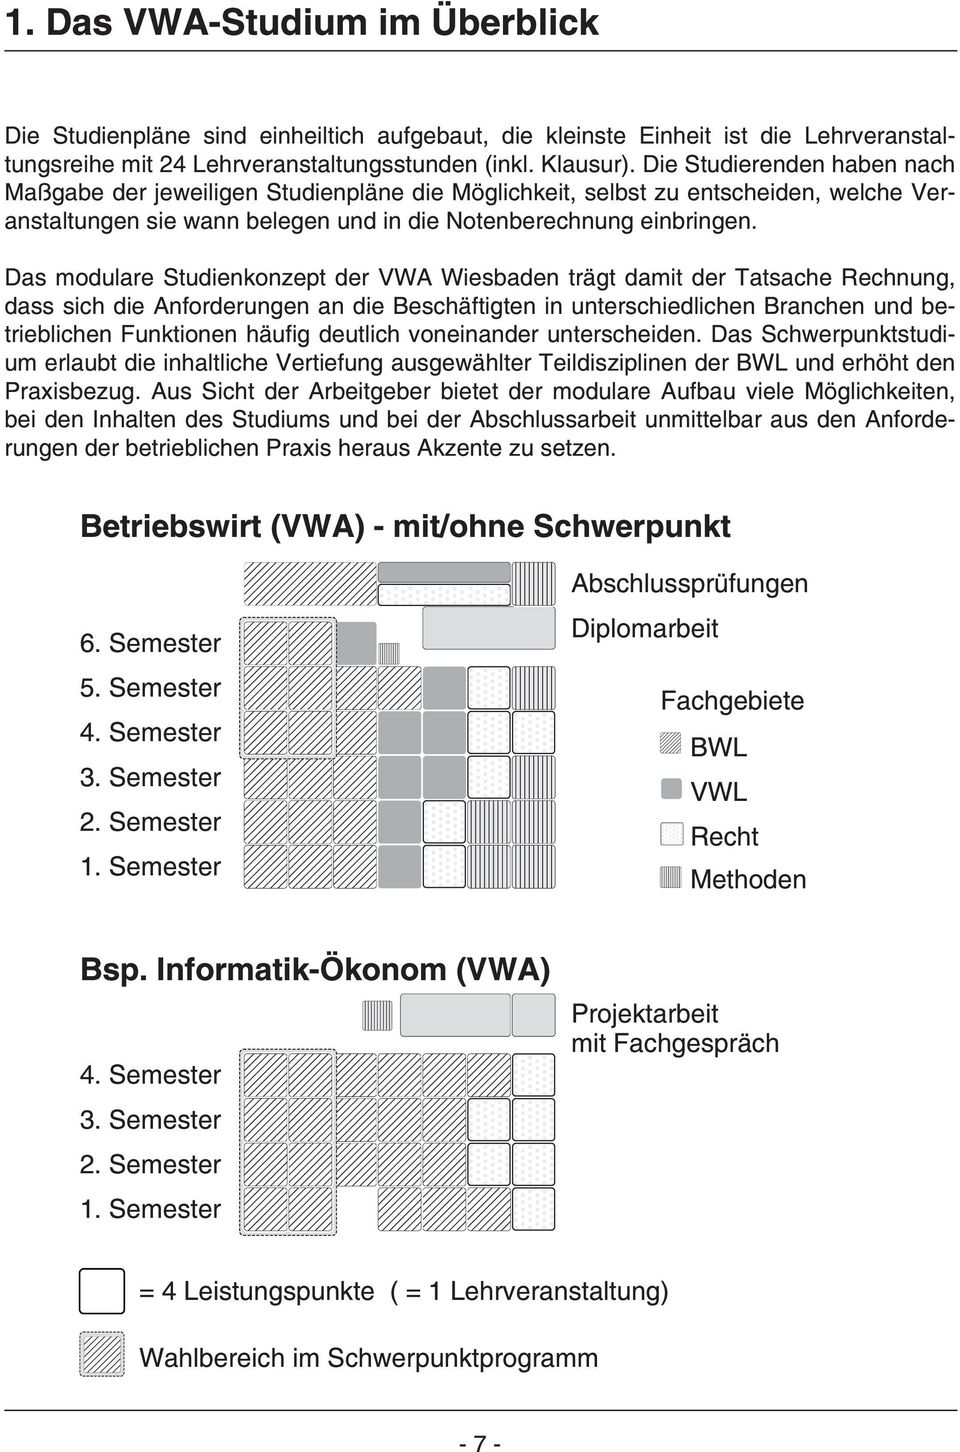 Das modulare Studienkonzept der VWA Wiesbaden trägt damit der Tatsache Rechnung, dass sich die Anforderungen an die Beschäftigten in unterschiedlichen Branchen und betrieblichen Funktionen häufig